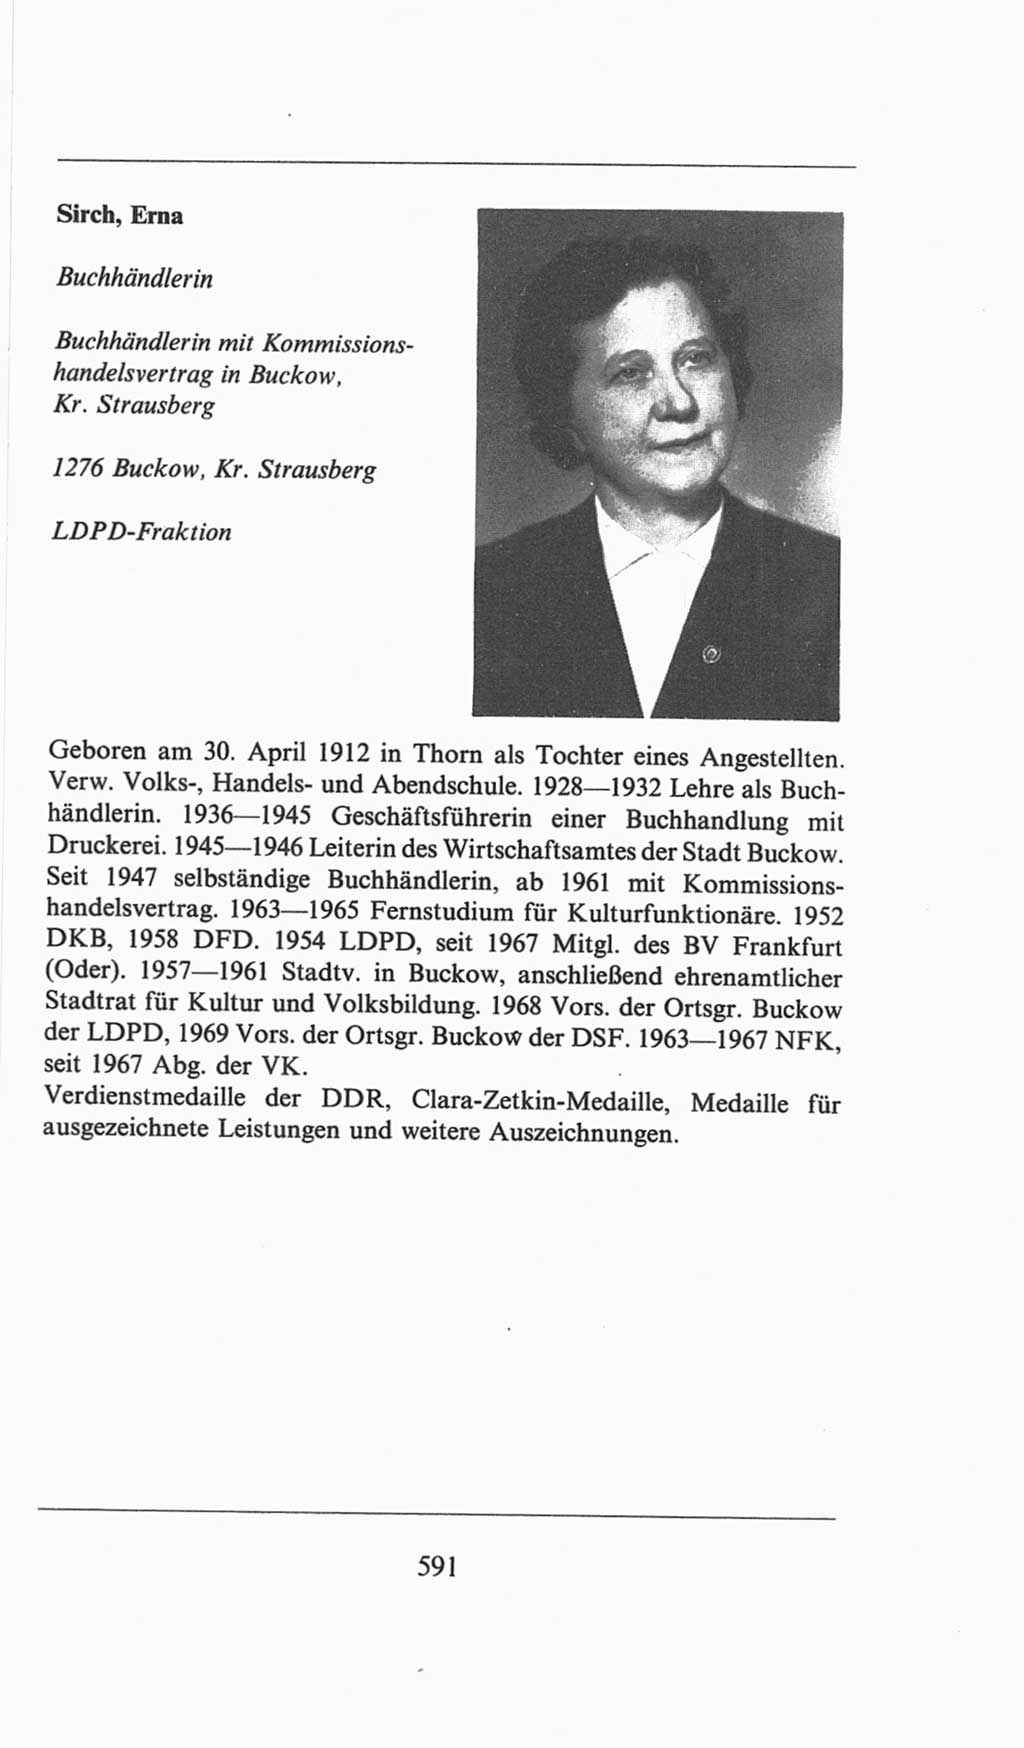 Volkskammer (VK) der Deutschen Demokratischen Republik (DDR), 6. Wahlperiode 1971-1976, Seite 591 (VK. DDR 6. WP. 1971-1976, S. 591)